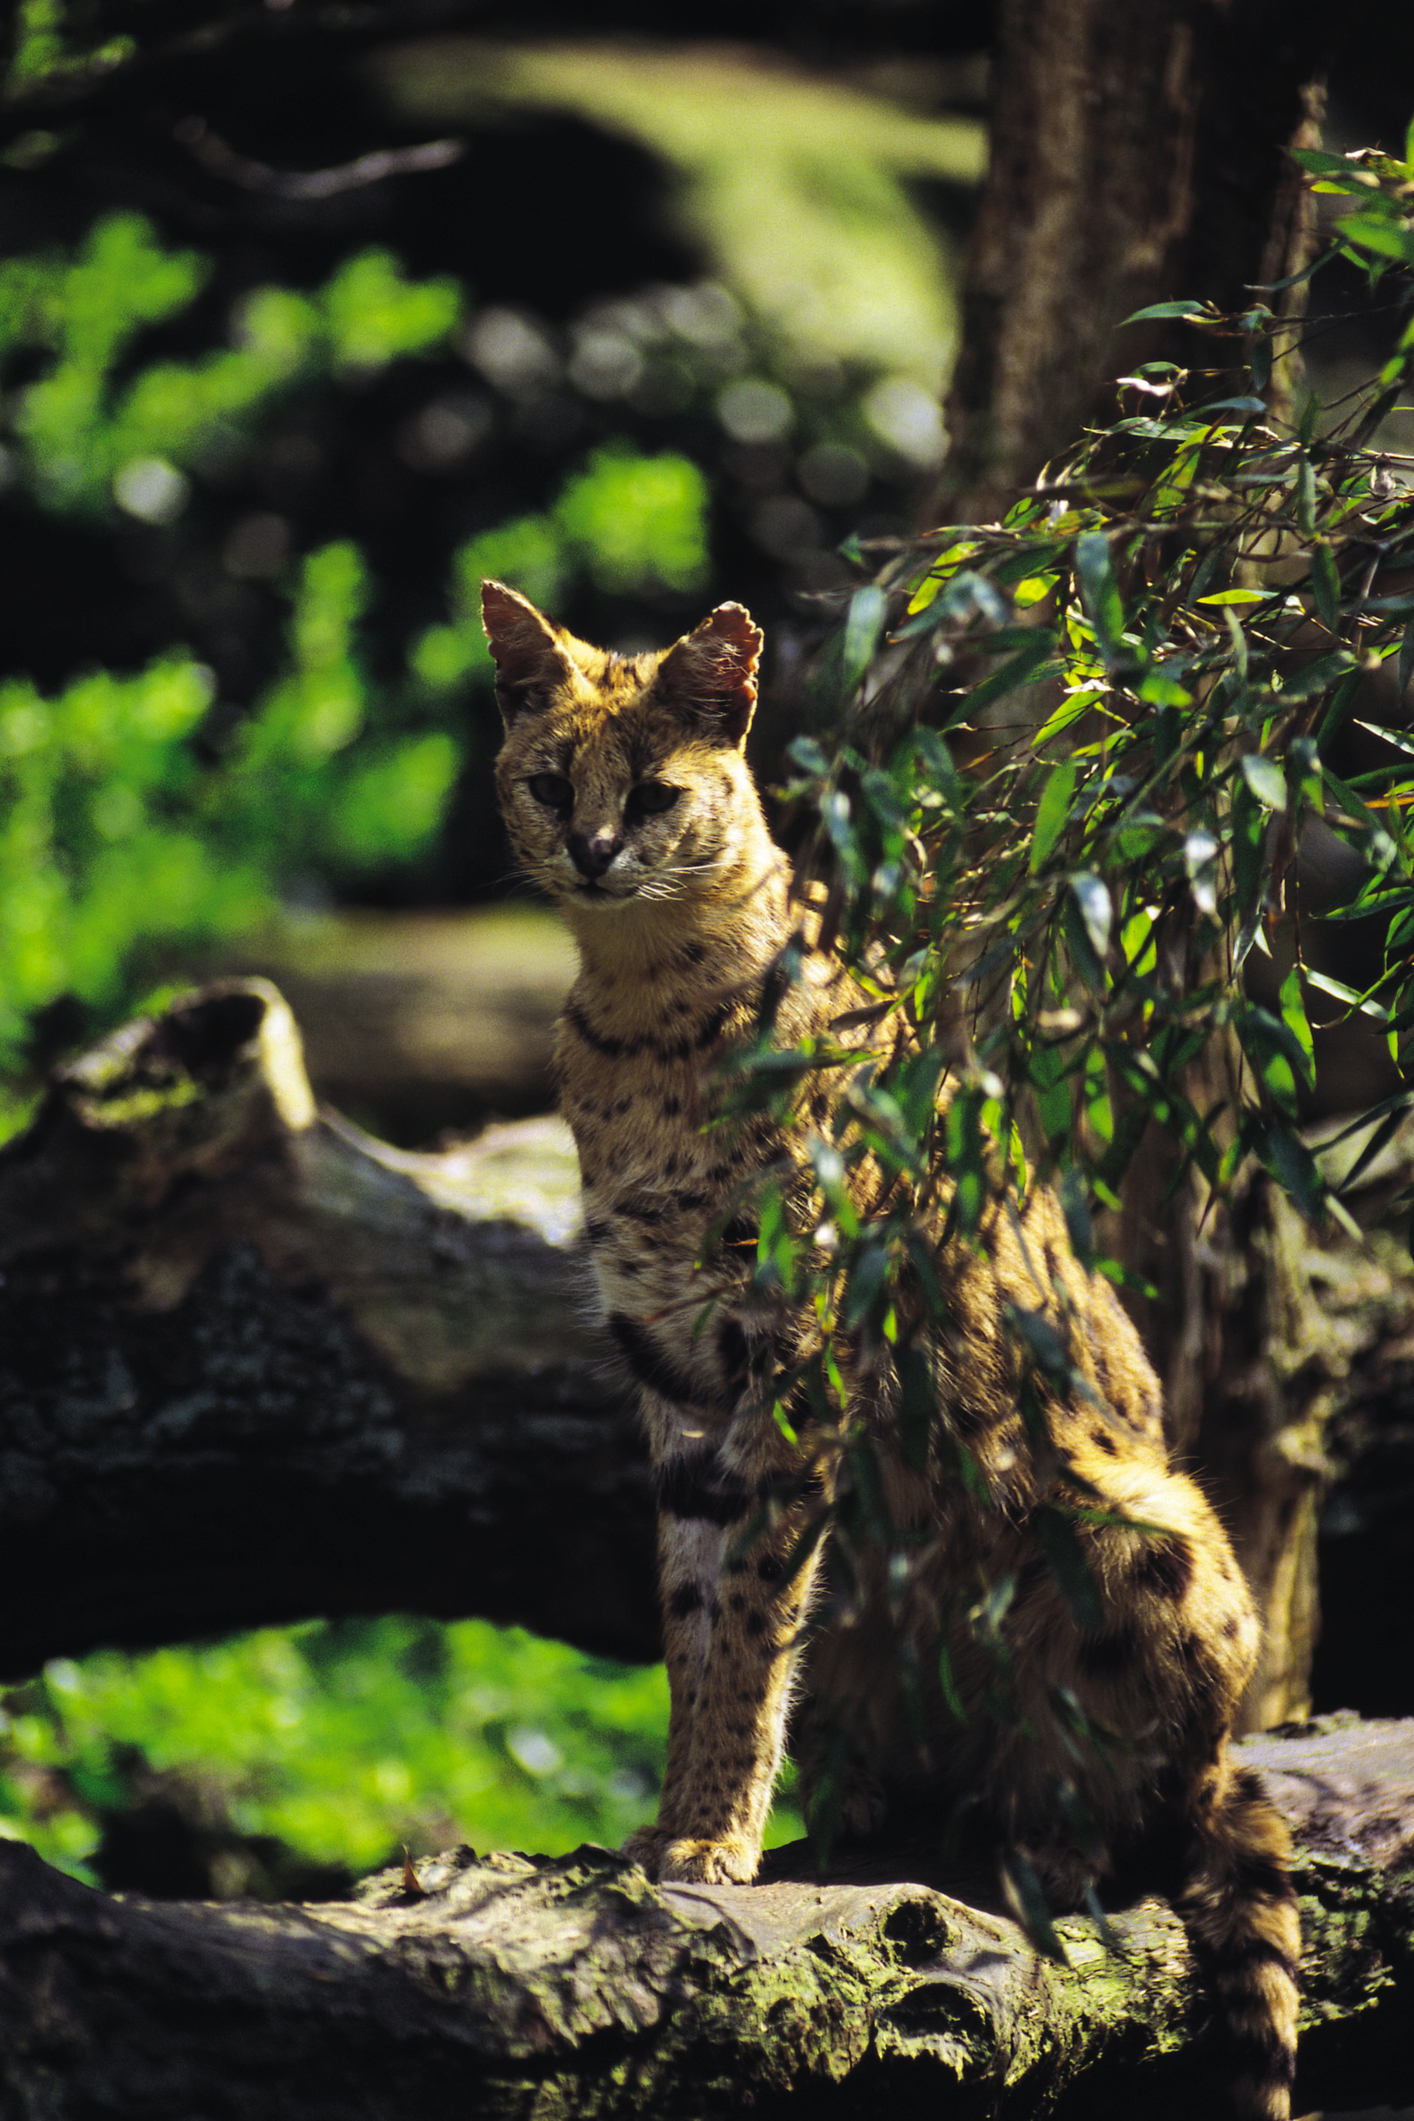 Леопардовата котка (Prionailurus bengalensis) е по-дребна от повечето от домашните породи. Среща се в Източна Азия. Обитава гористи местности и храсталаци в близост до вода, без да се притесняват особено от човешко присъствие. Отличен катерач е и дори плува, макар и рядко. Плячката и е най-разнообразна, в зависимост от местообитанието, но включва най-вече дребни гризачи.